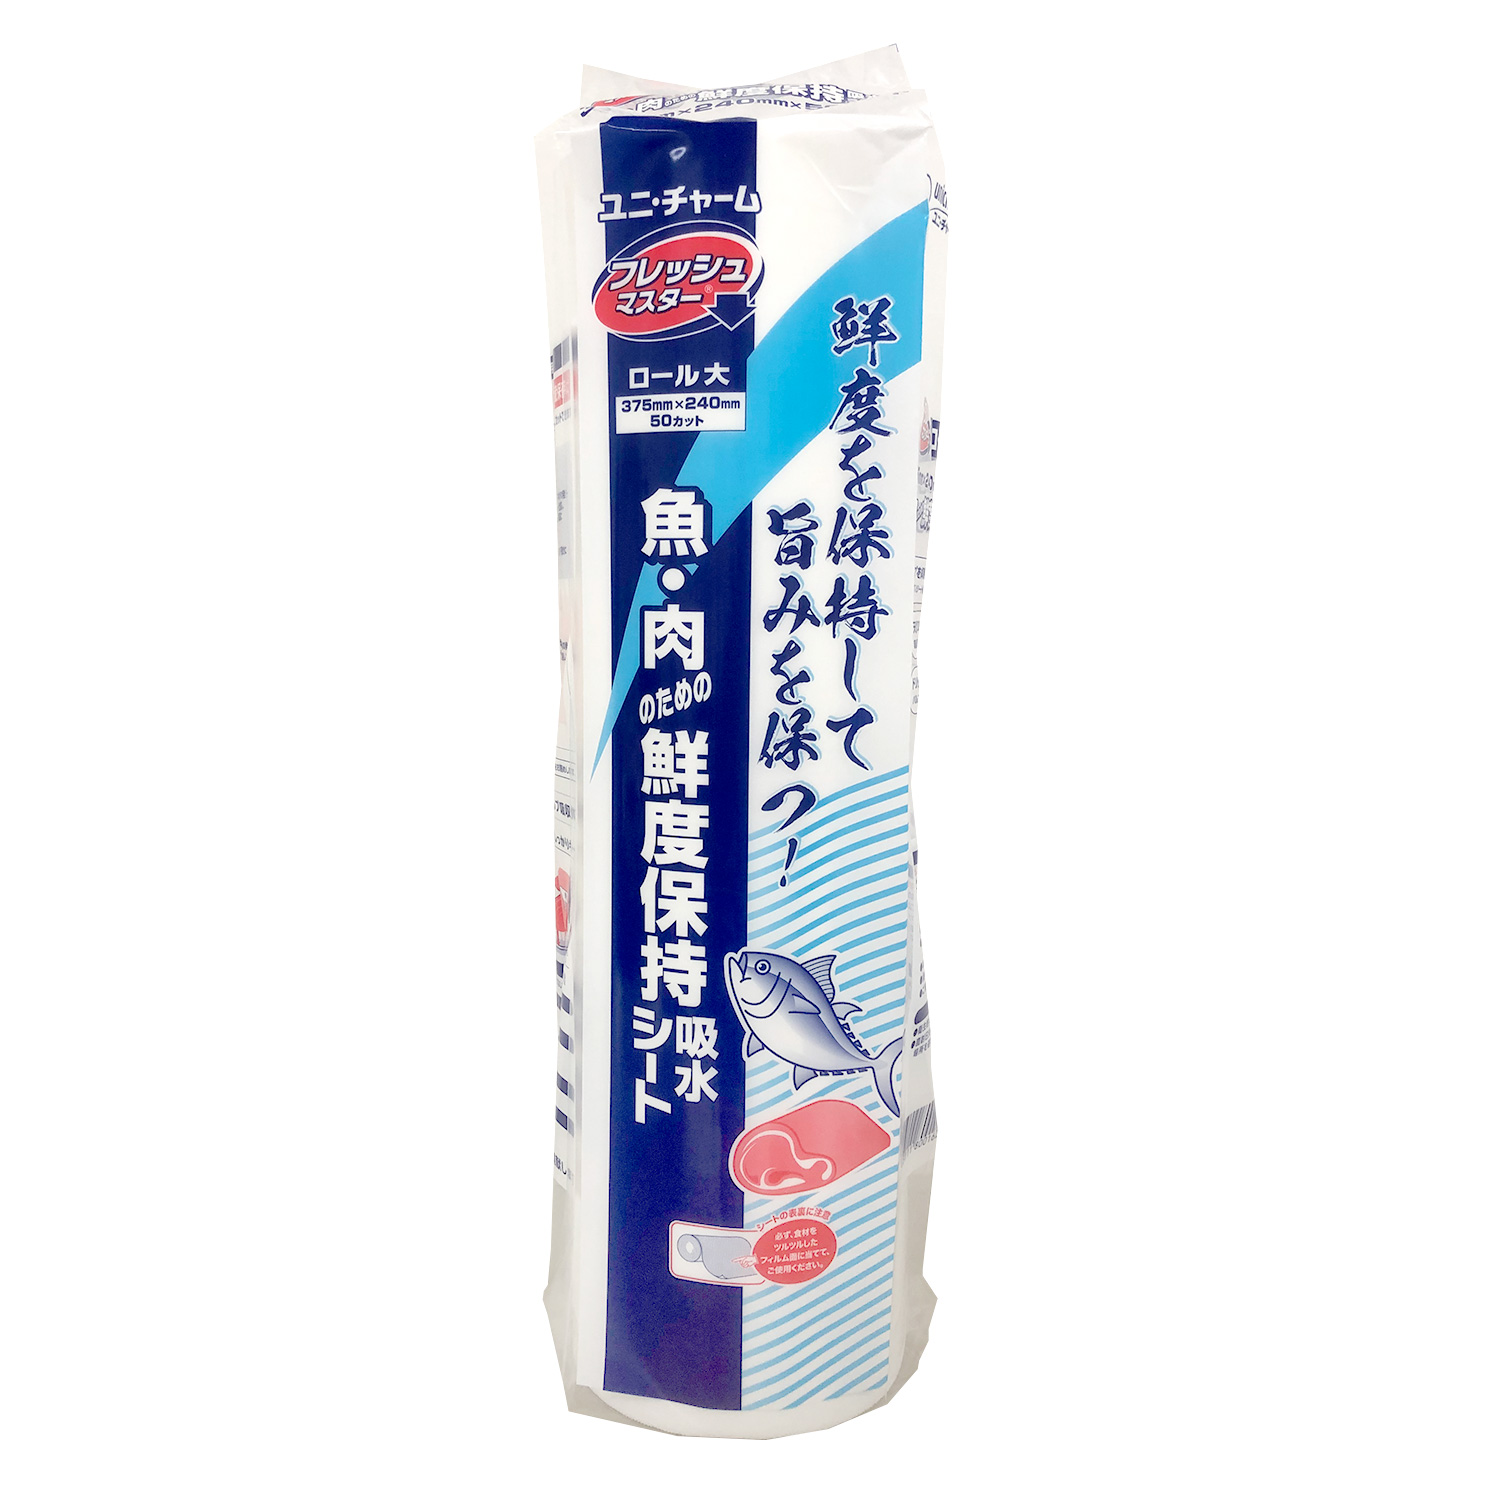  日本製 保鮮紙 ユニ・チャーム フレッシュマスター ロール 大 食品用品 鮮度保持 肉 魚 保鮮紙 00202688